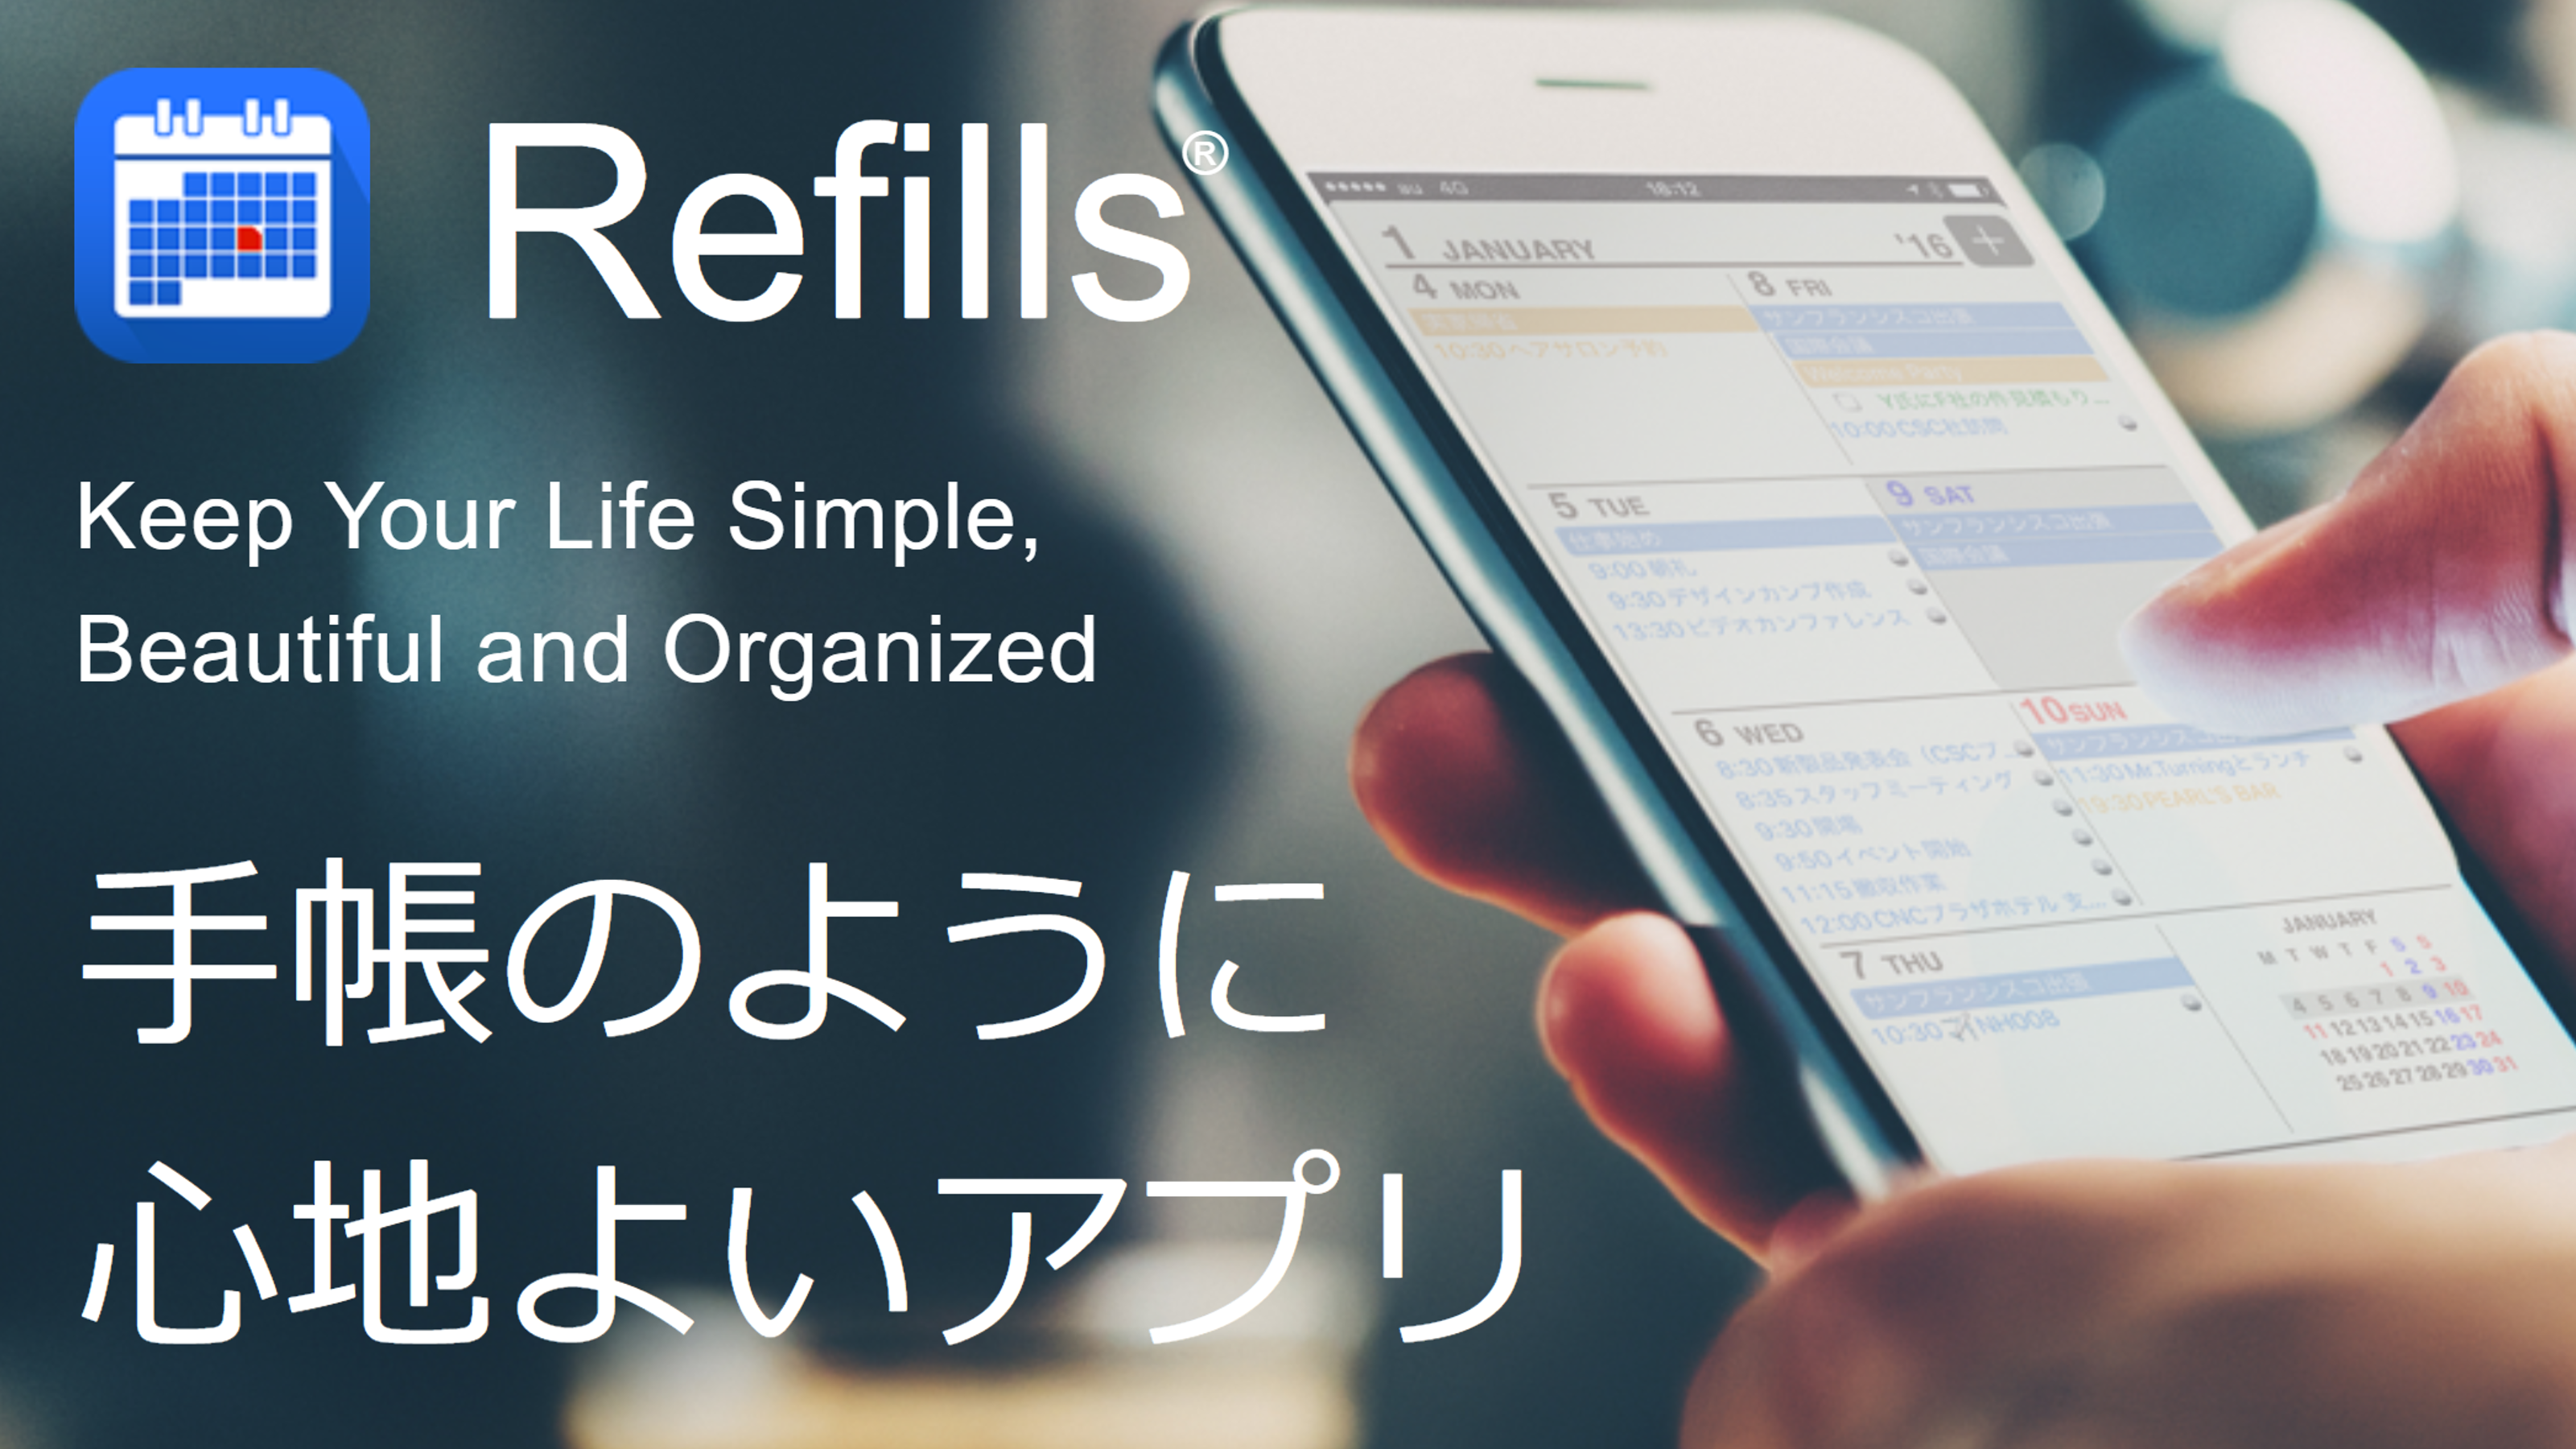 スケジュールを管理する手帳アプリ「Refills」